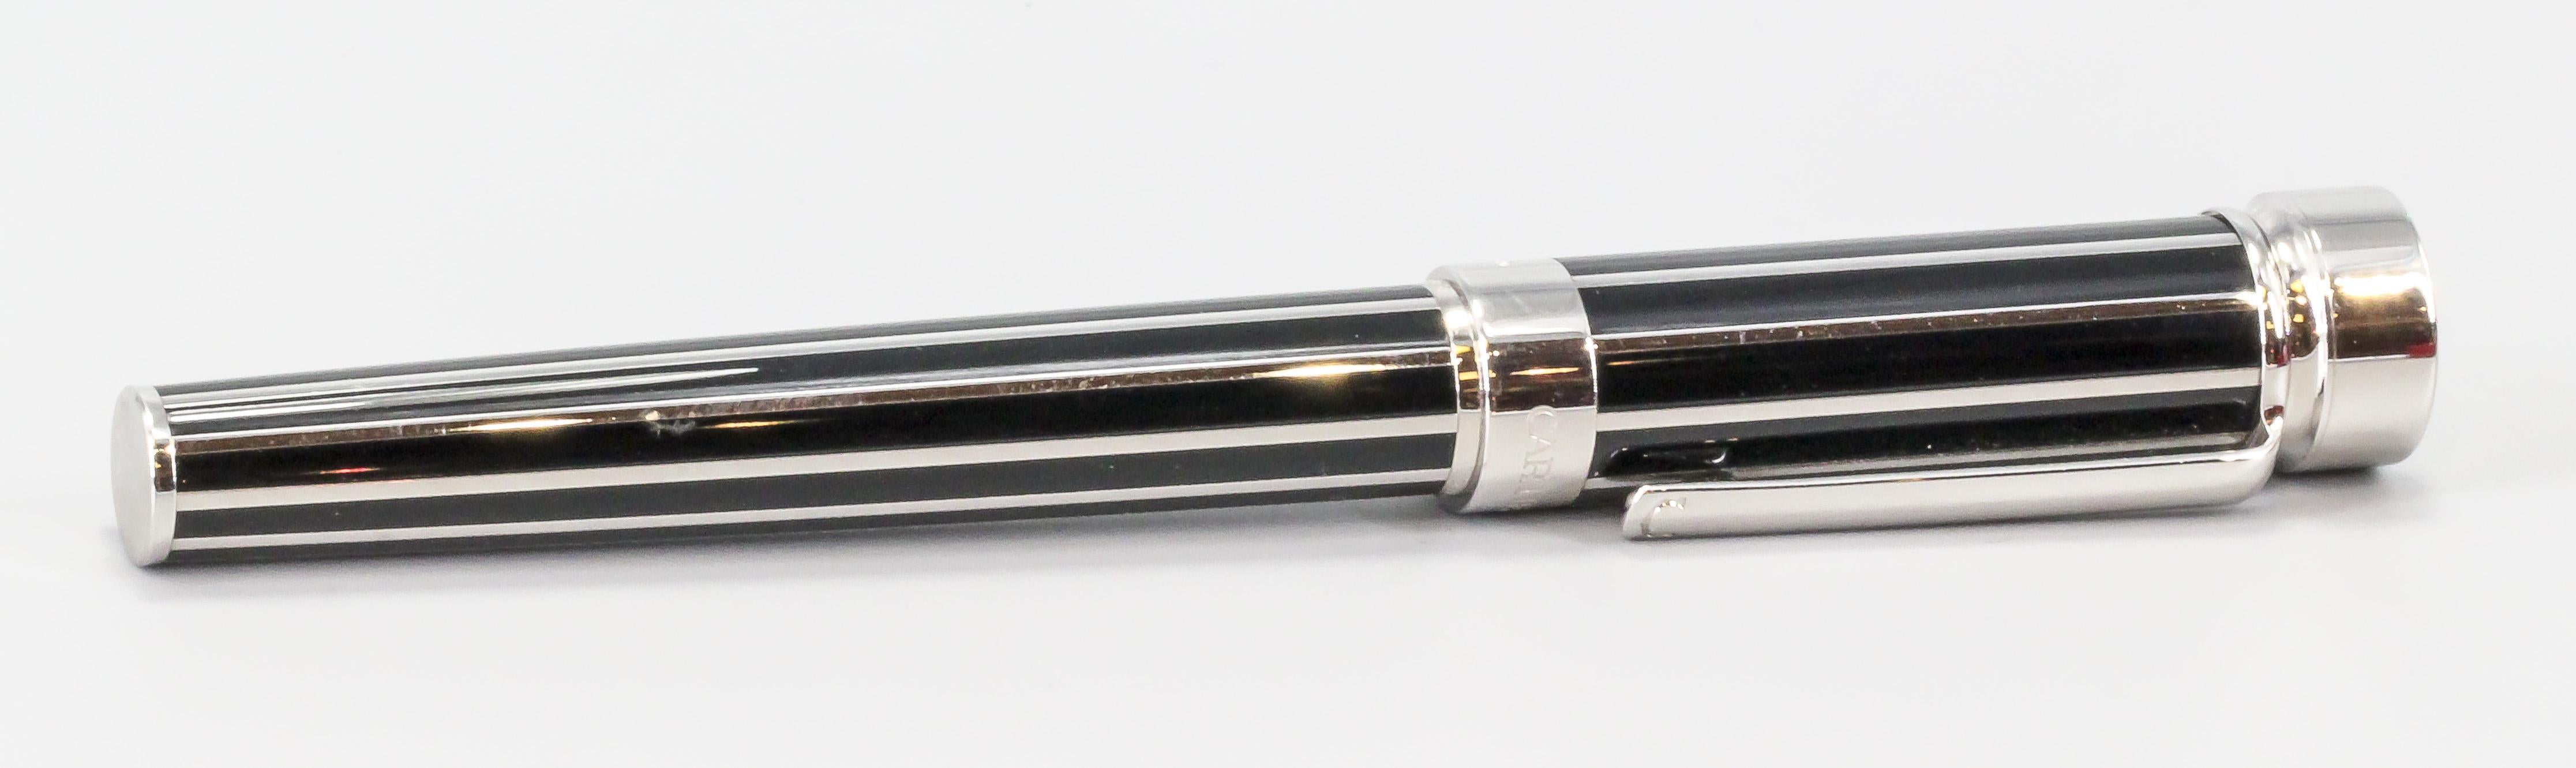 catier pen